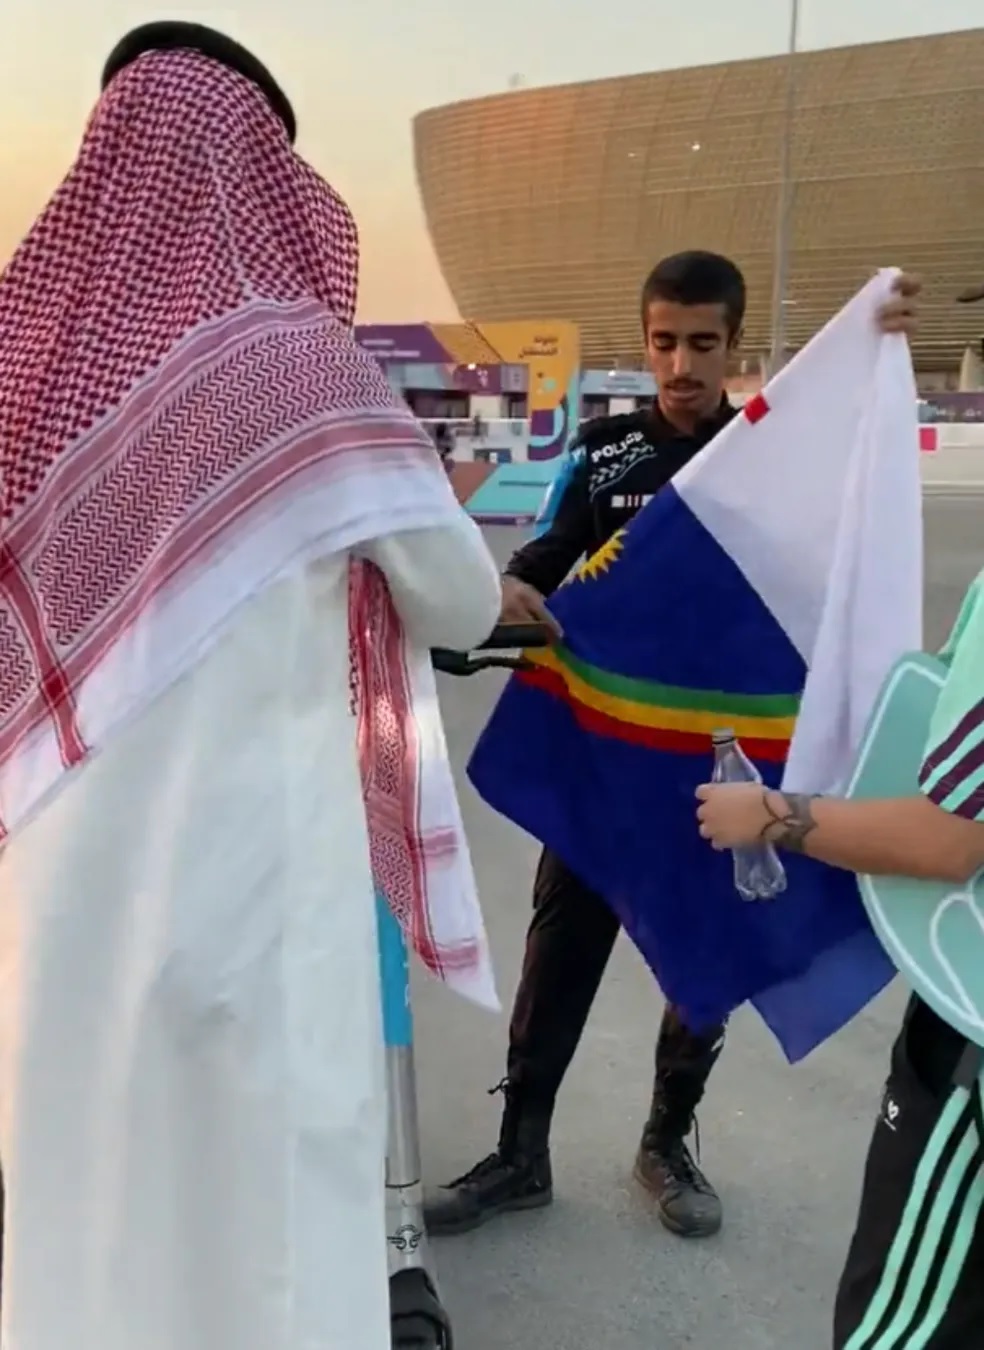 [VÍDEO] Bandeira de Pernambuco é confundida com LGBTQIAP+ e gera abordagem no Catar